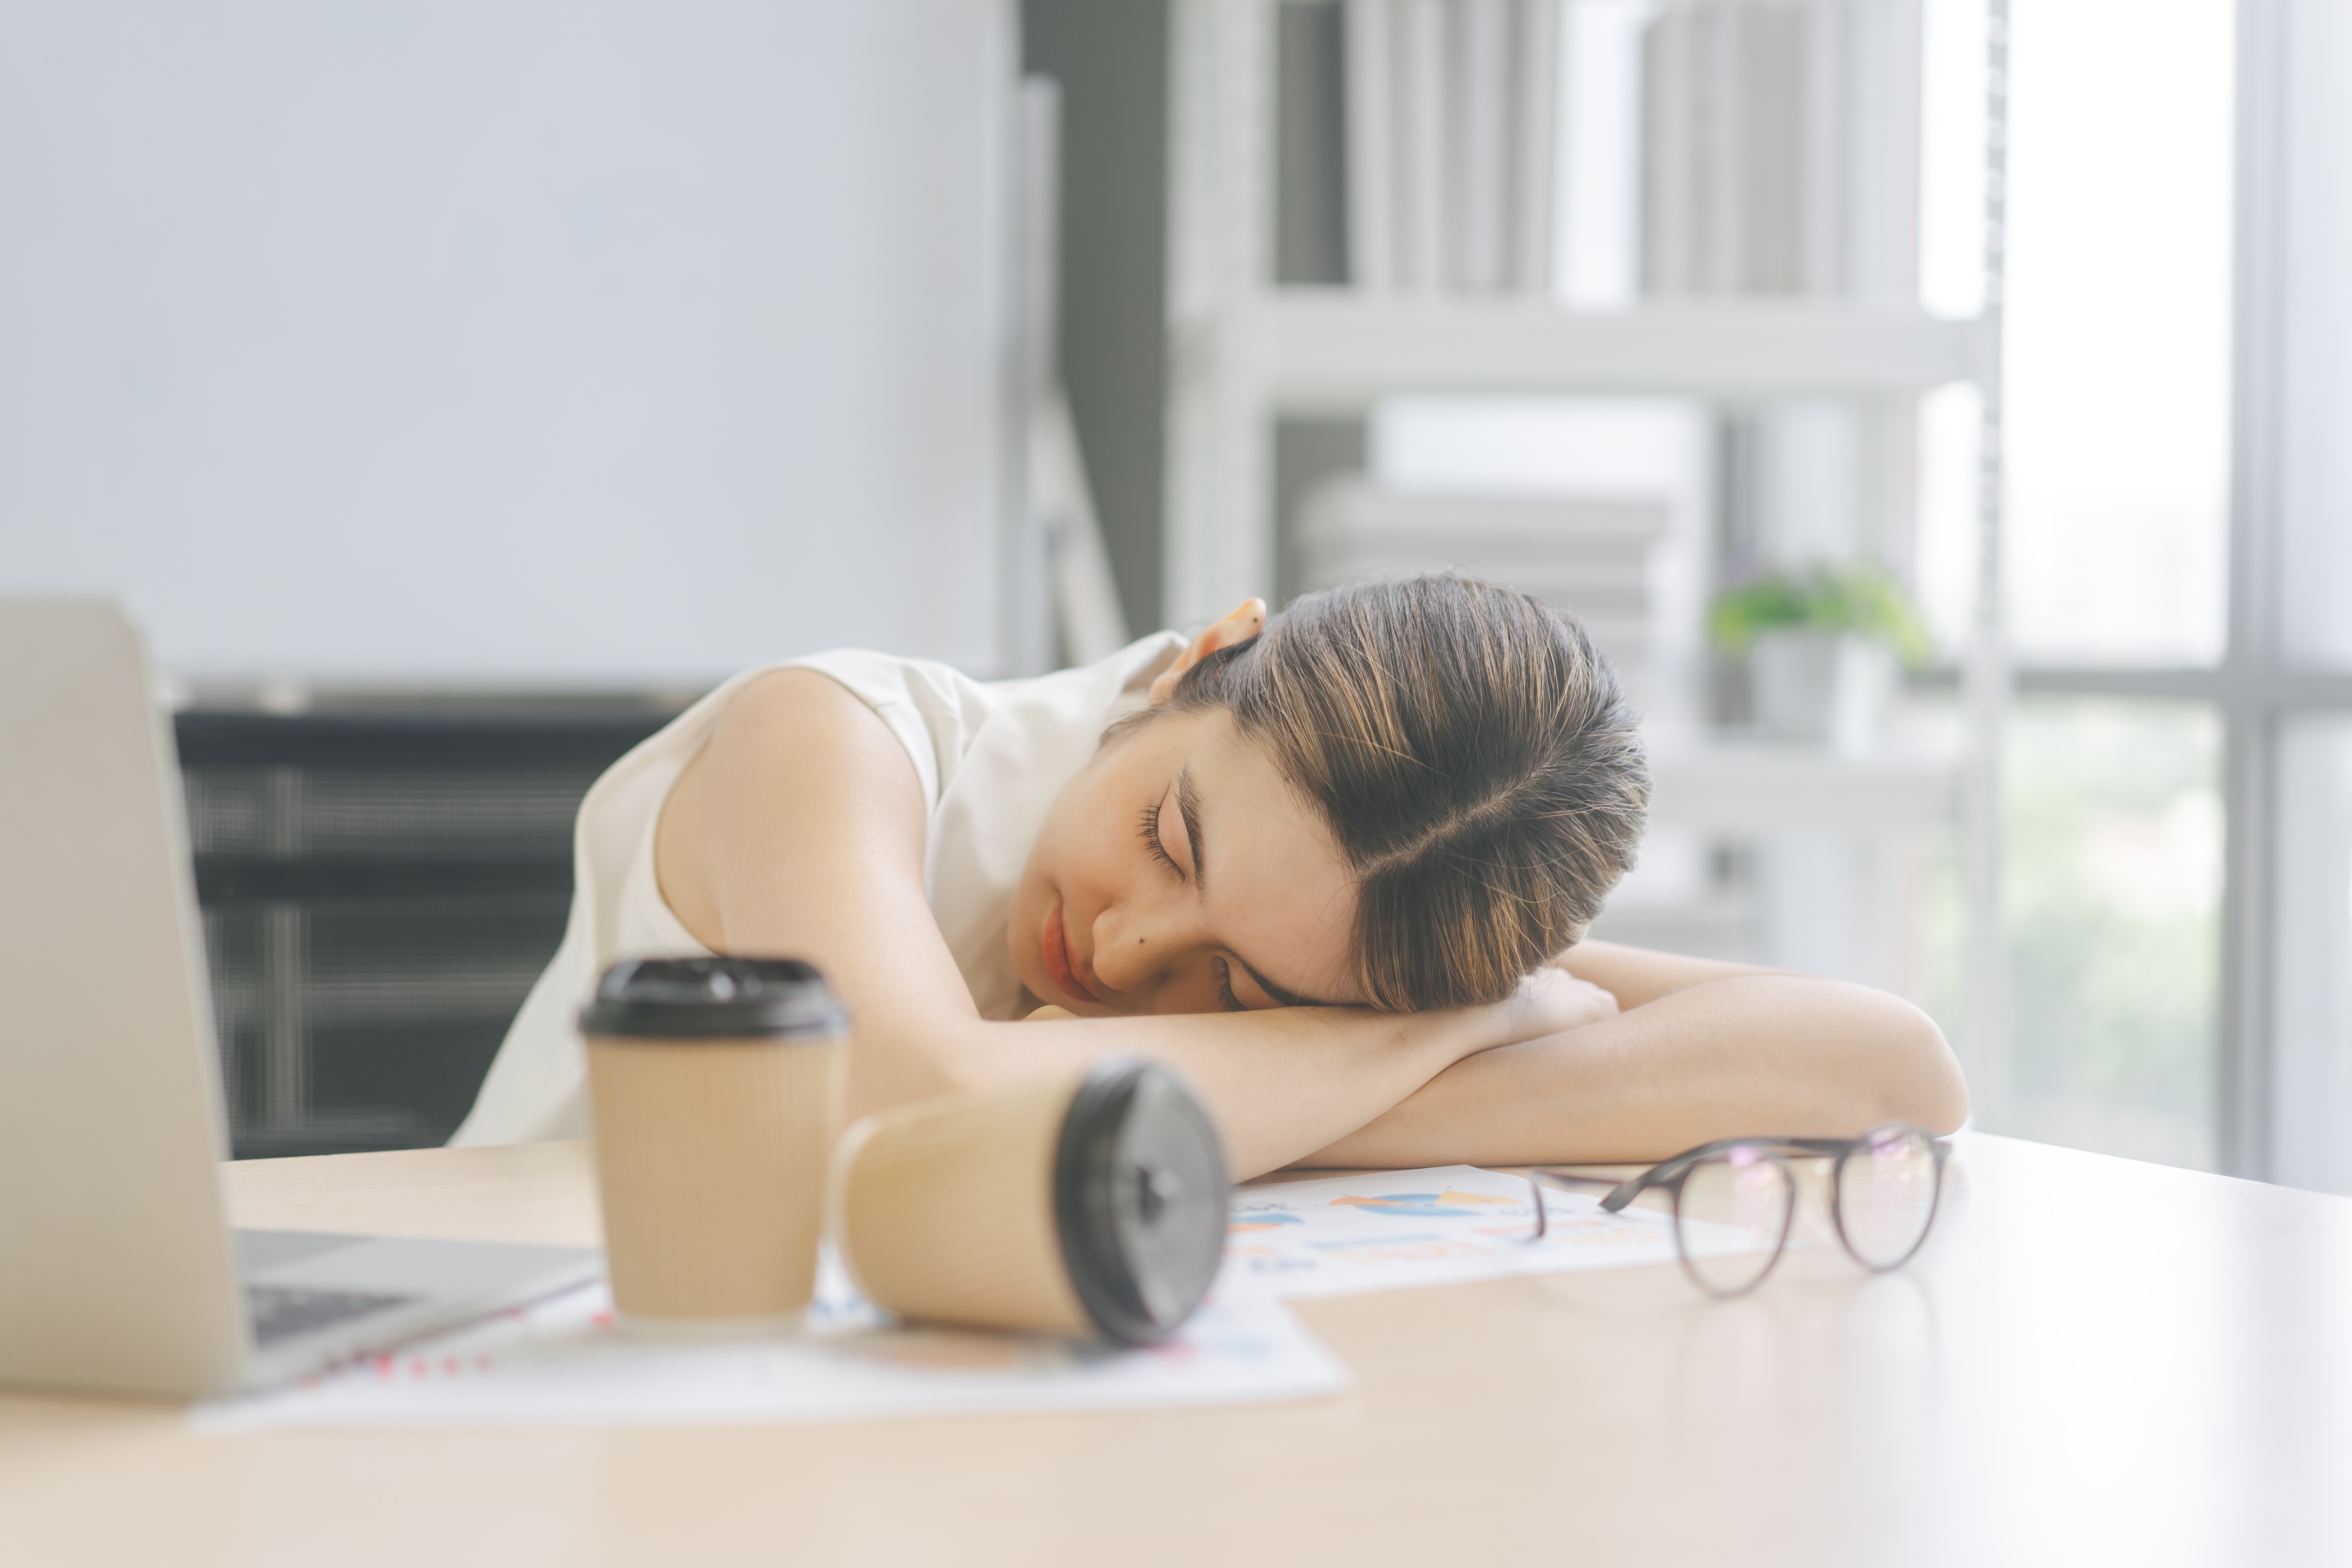 Une jeune femme fatiguée dort sur la table avec des tasses de café | Source : Shutterstock